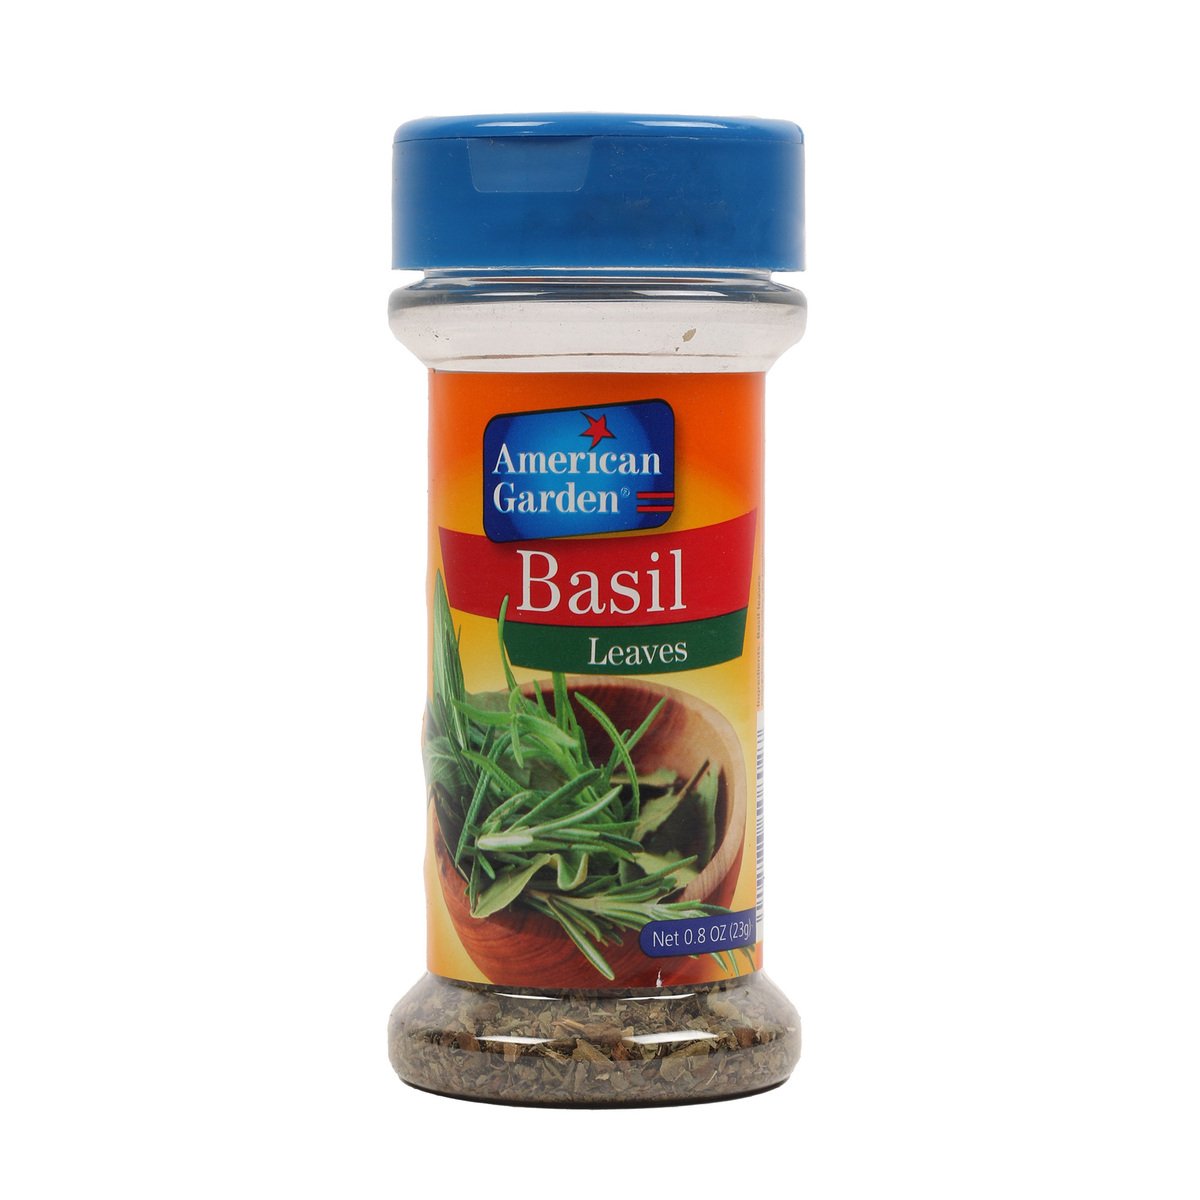 American Garden Basil Leaves 23g